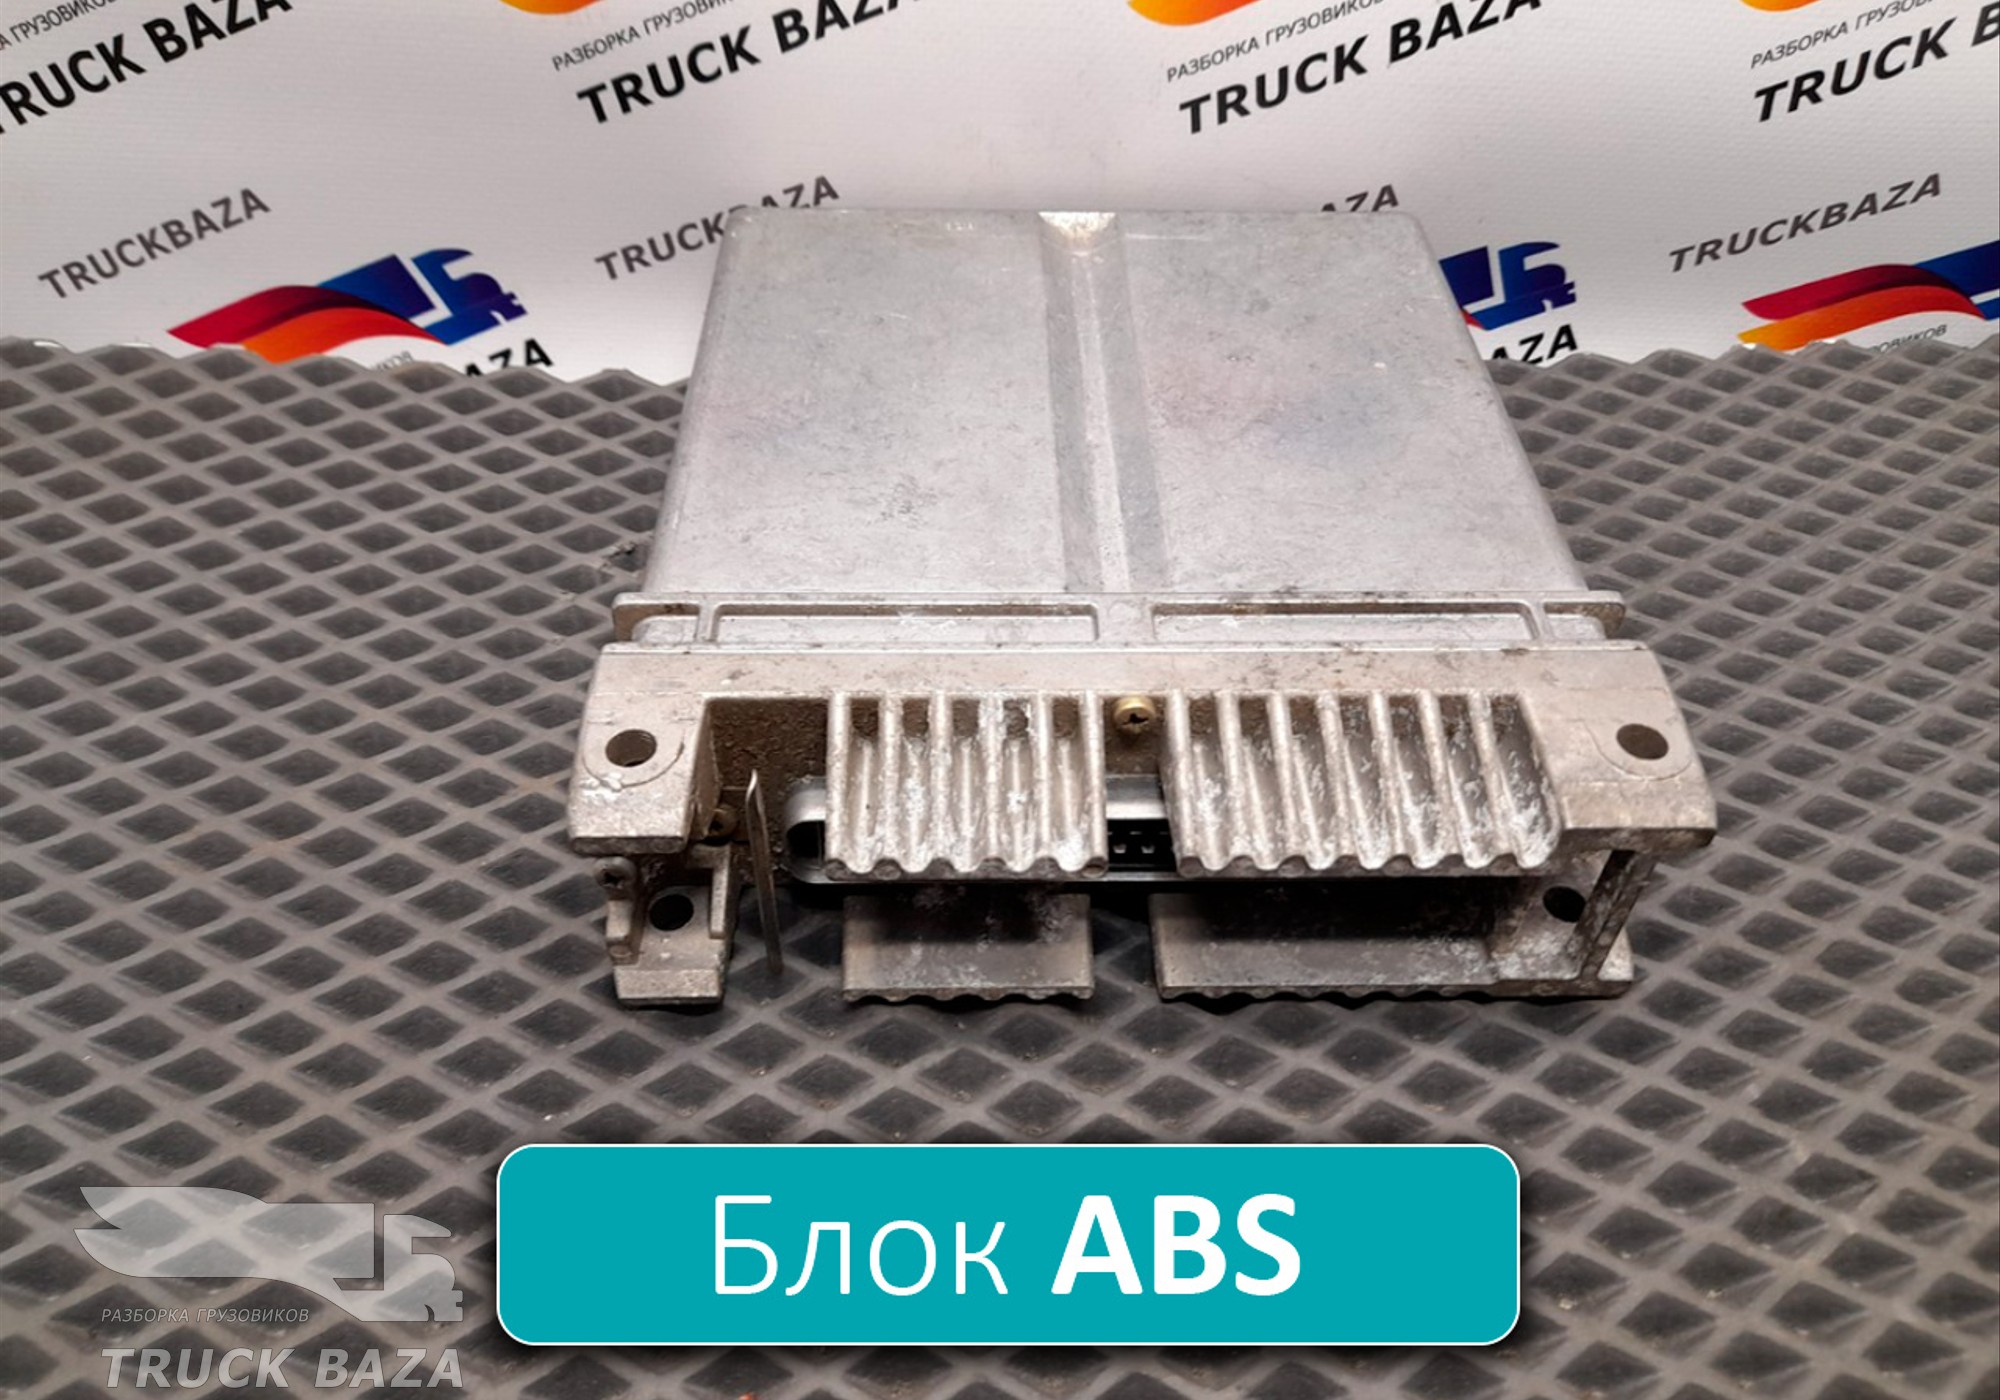 5010201469 Блок управления ABS для Renault Kerax